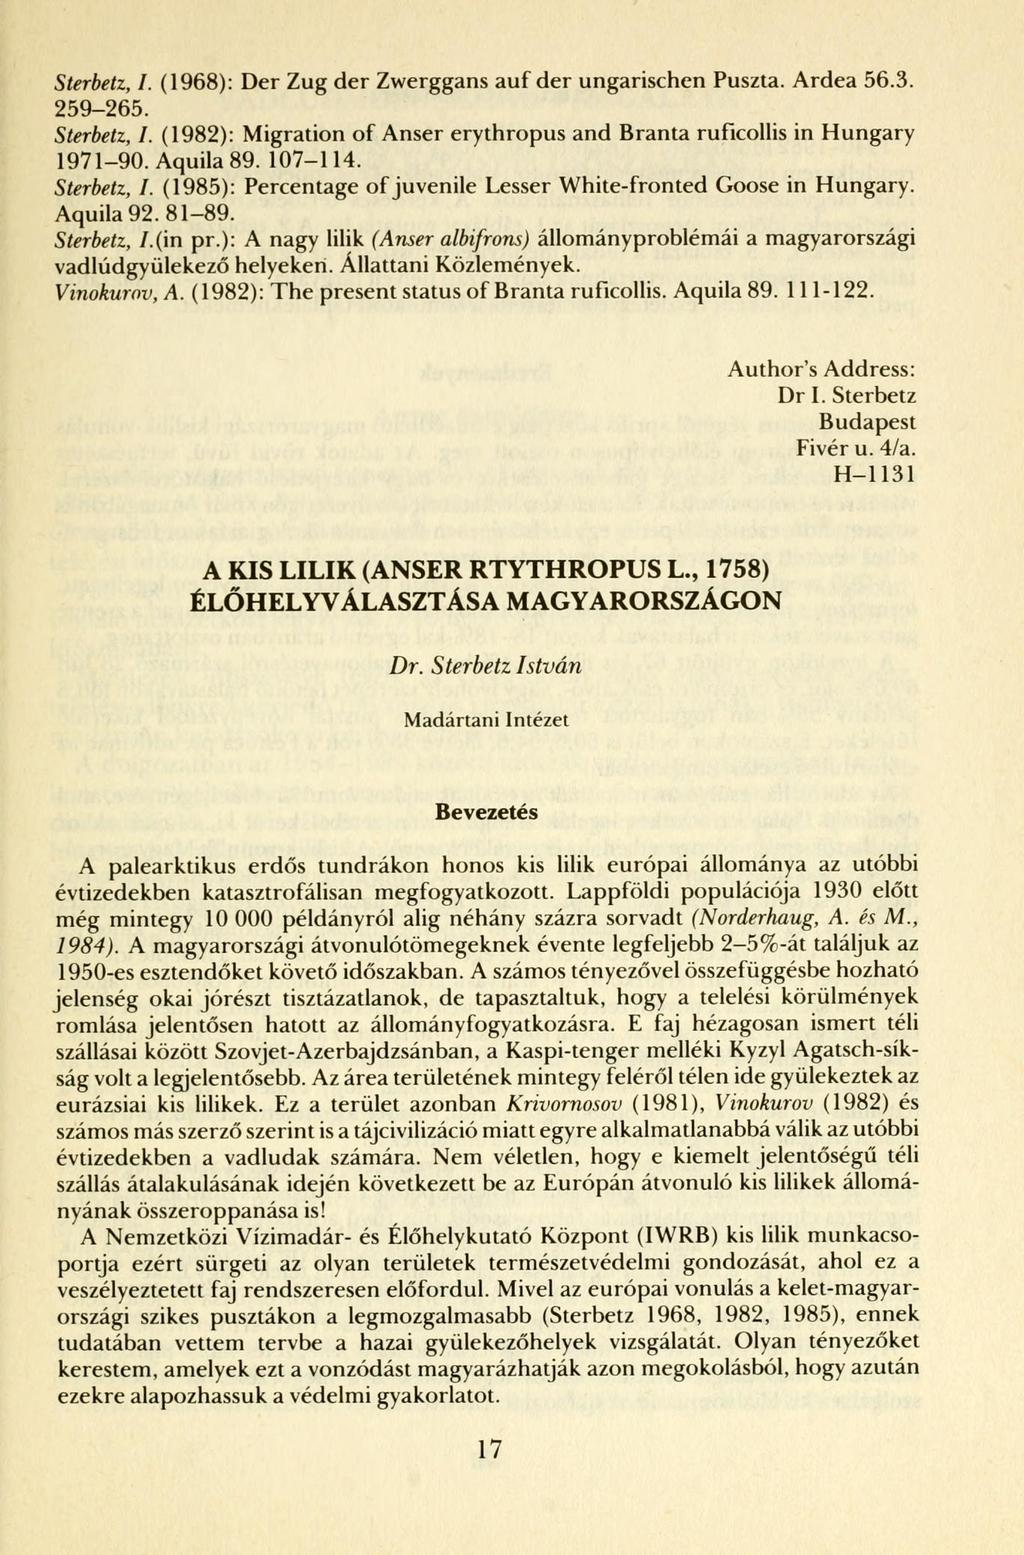 Sterbetz, I. (1968): Der Zug der Zwerggans auf der ungarischen Puszta. Ardea 56.3. 259-265. Sterbetz, I. (1982): Migration of Anser erythropus and Branta ruficollis in Hungary 1971-90. Aquila 89.